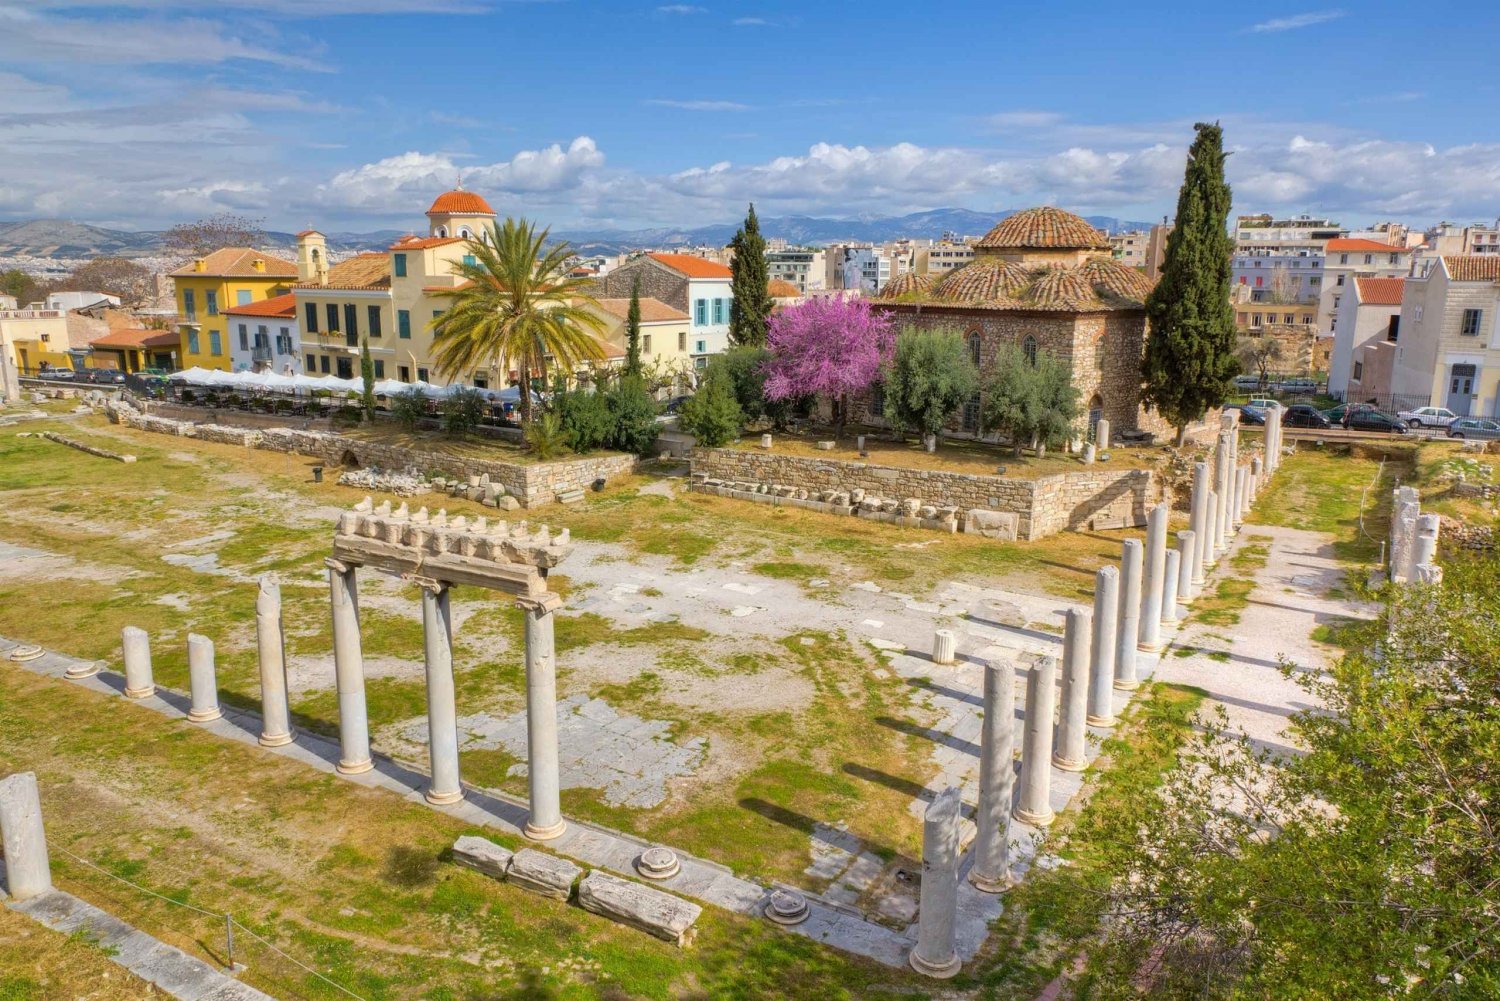 Atenas: Ticket electrónico del Ágora romana y audioguía opcional